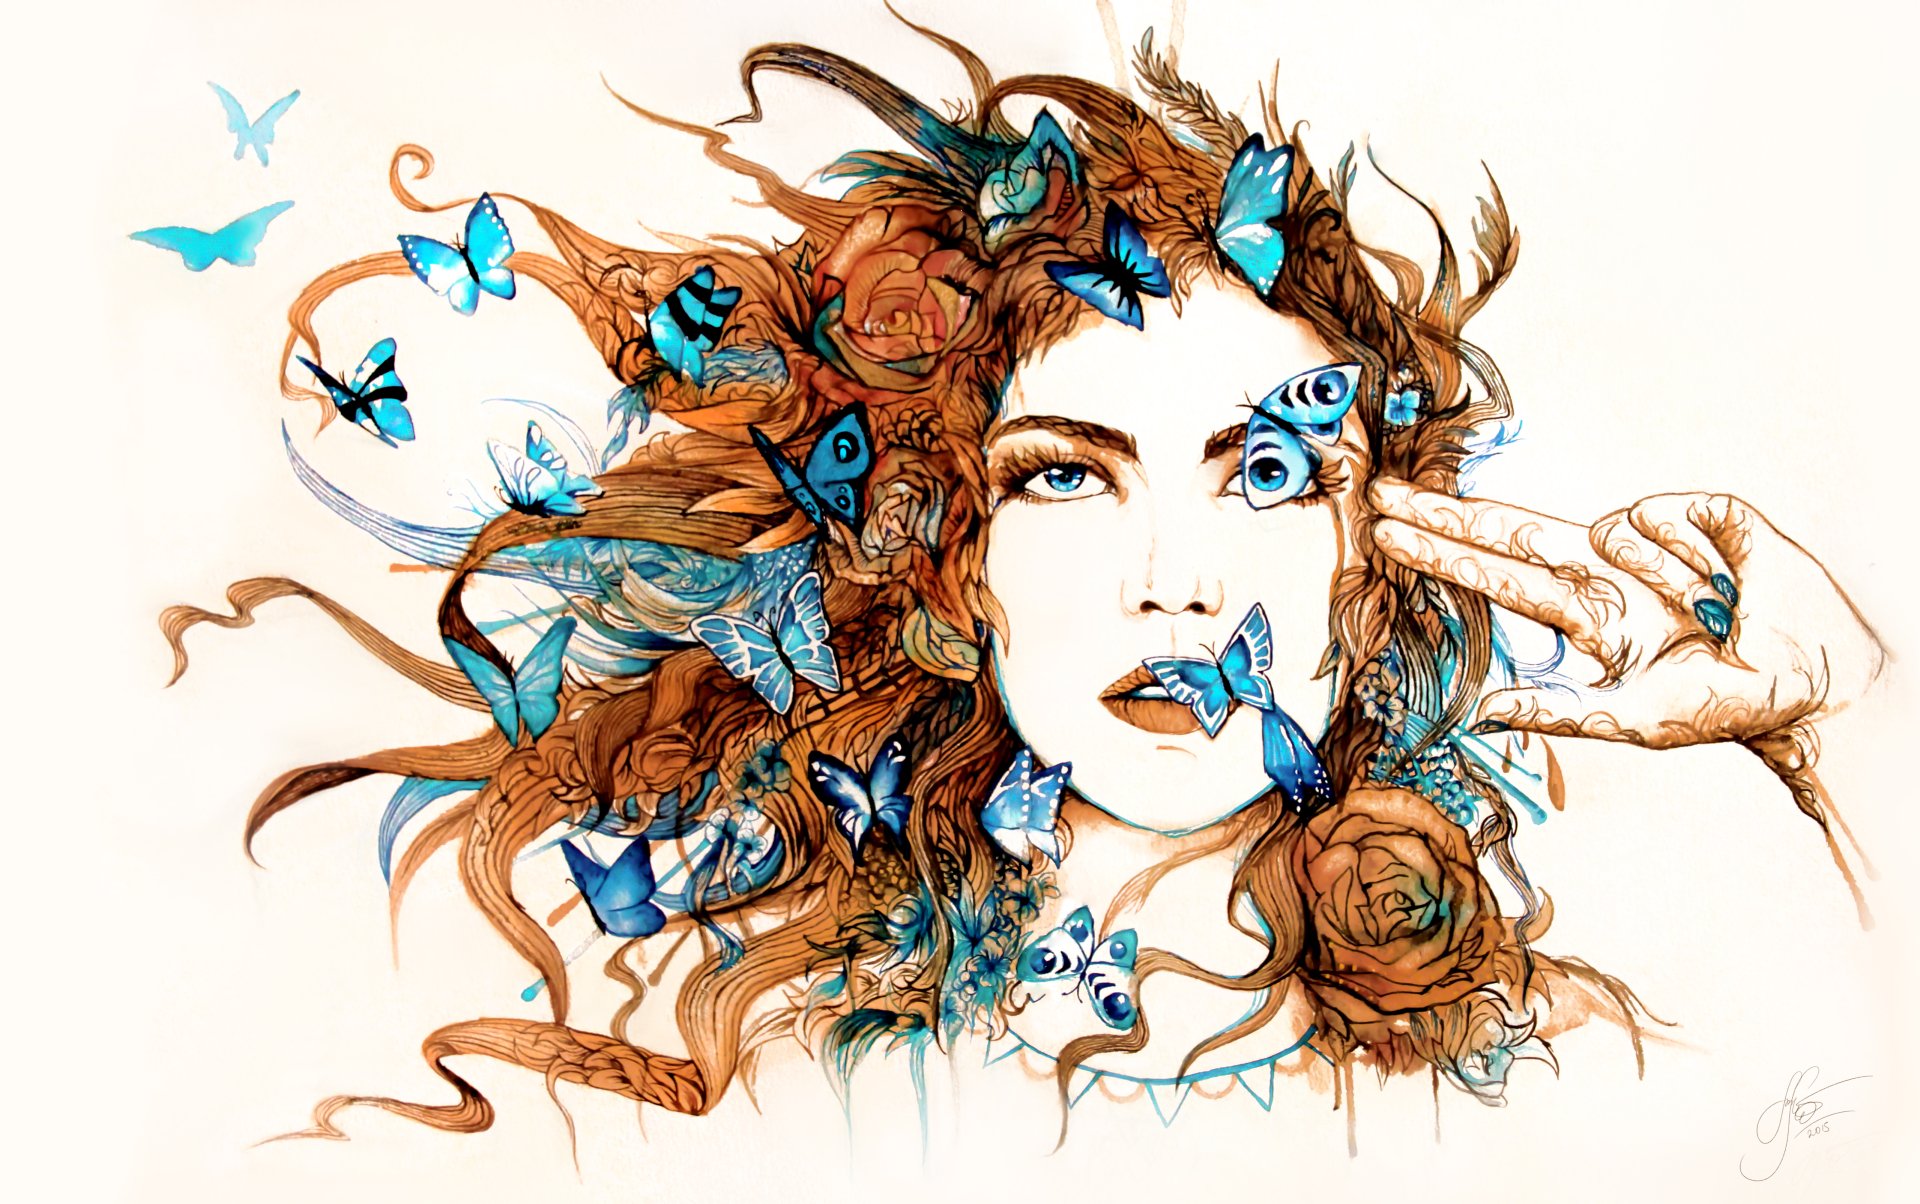 蝴蝶和小女孩风格插画设计作品-设计人才灵活用工-设计DNA